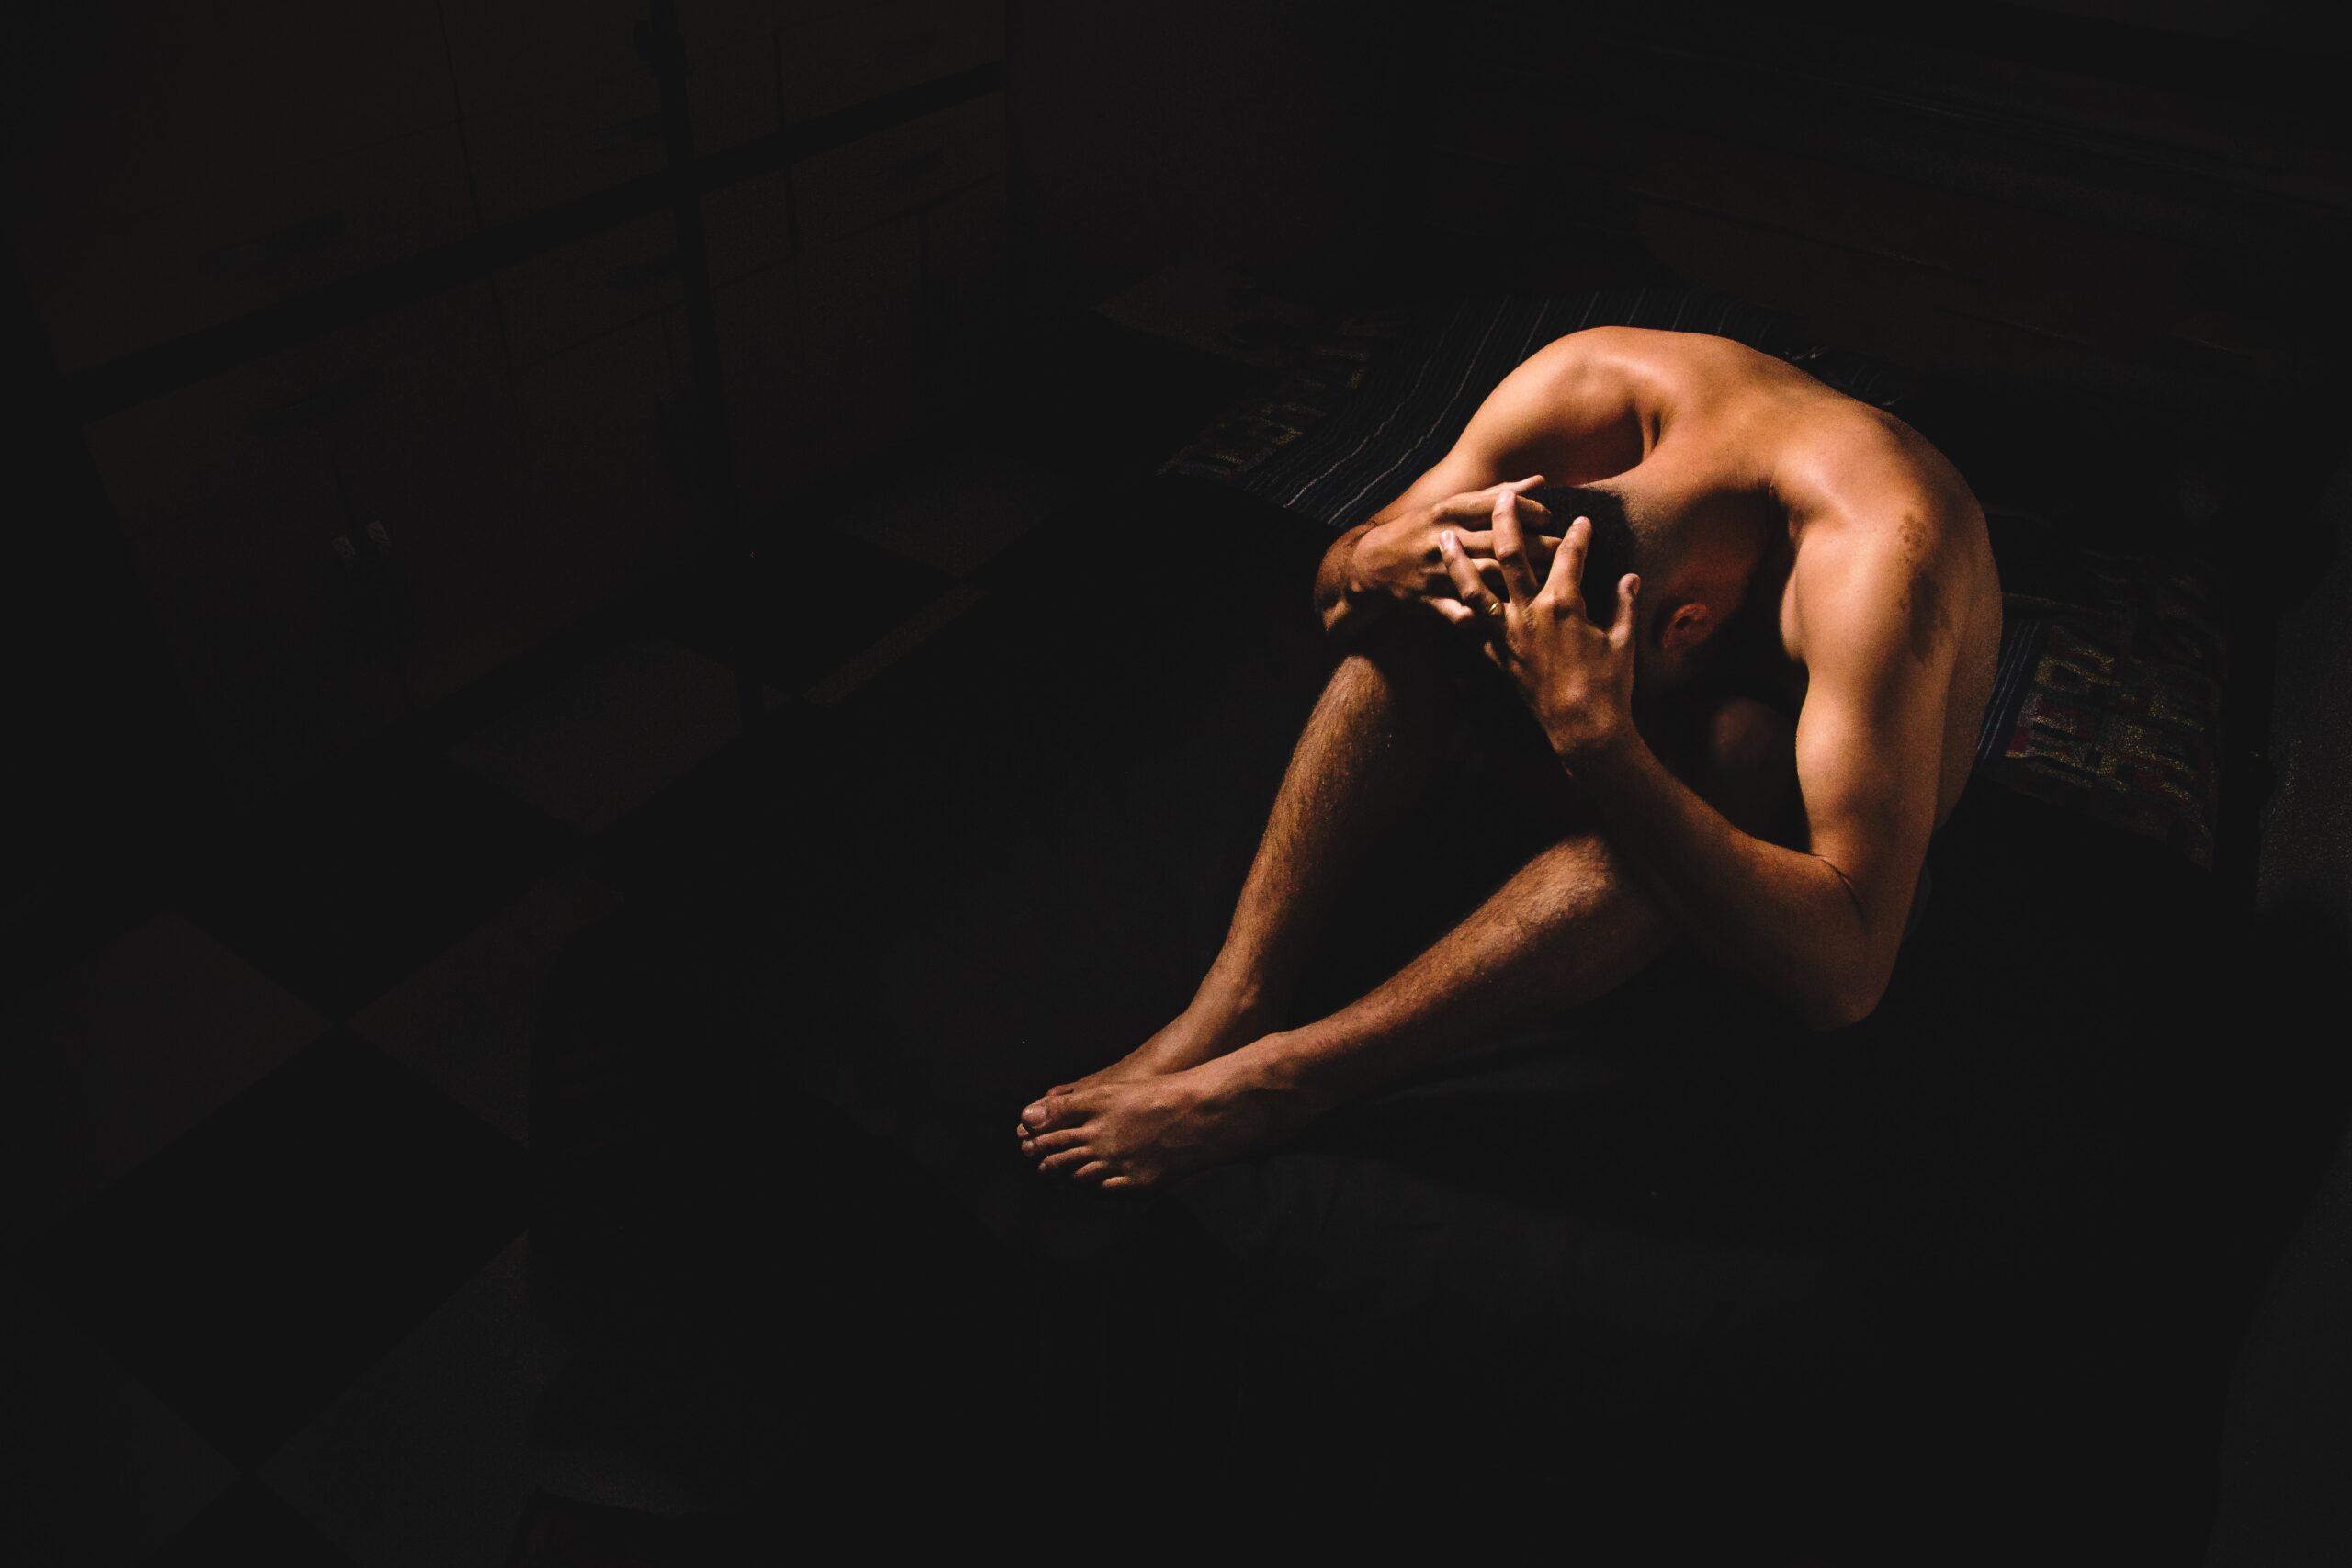 Ein Mensch sitzend am Boden, Chiarroscurro Stil. Symbolfoto zu Artikel über Akt Fotografie Mann, männliche Akt Fotografie